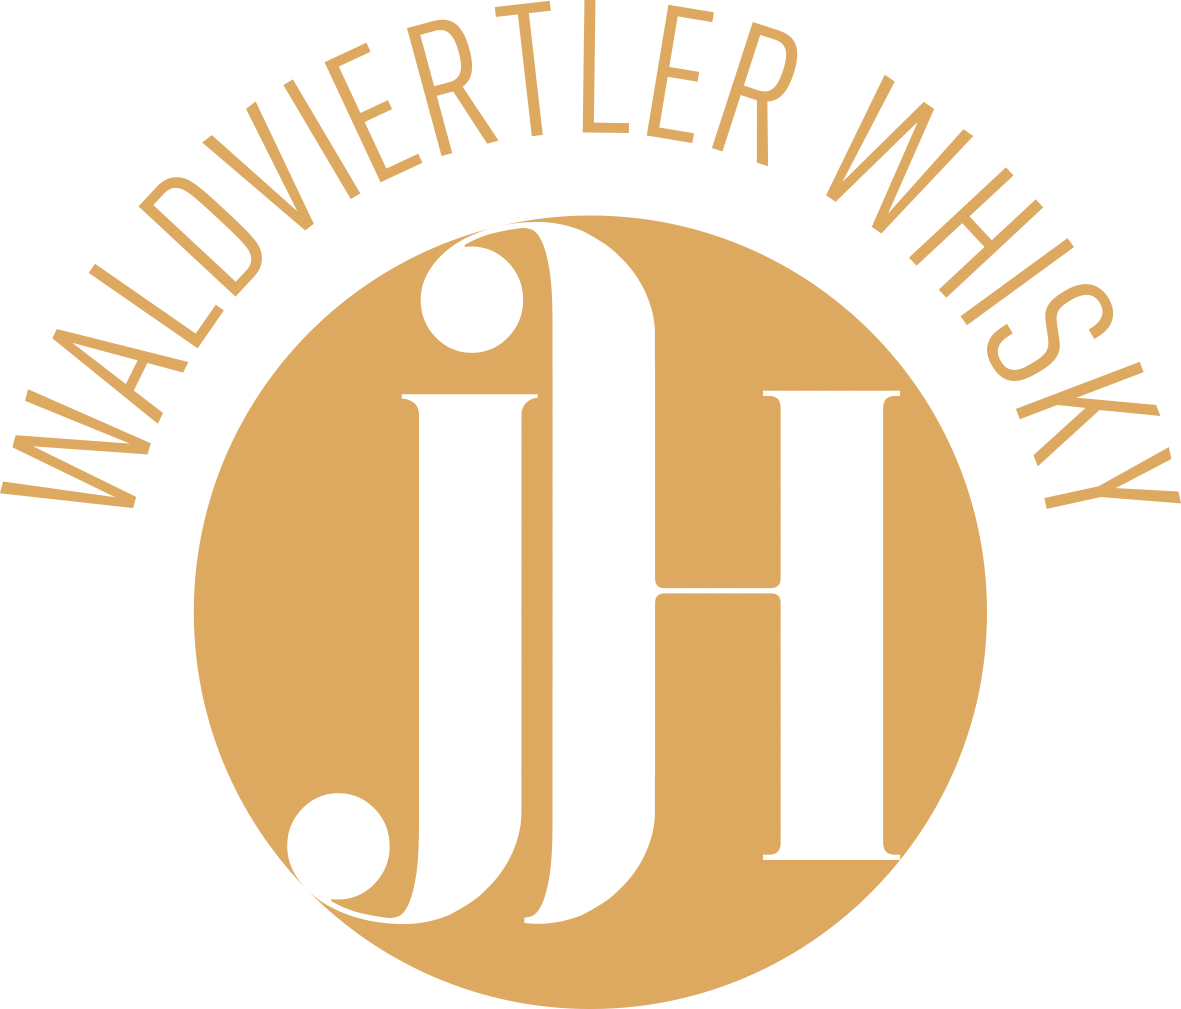 Whiskyerlebniswelt J. Haider